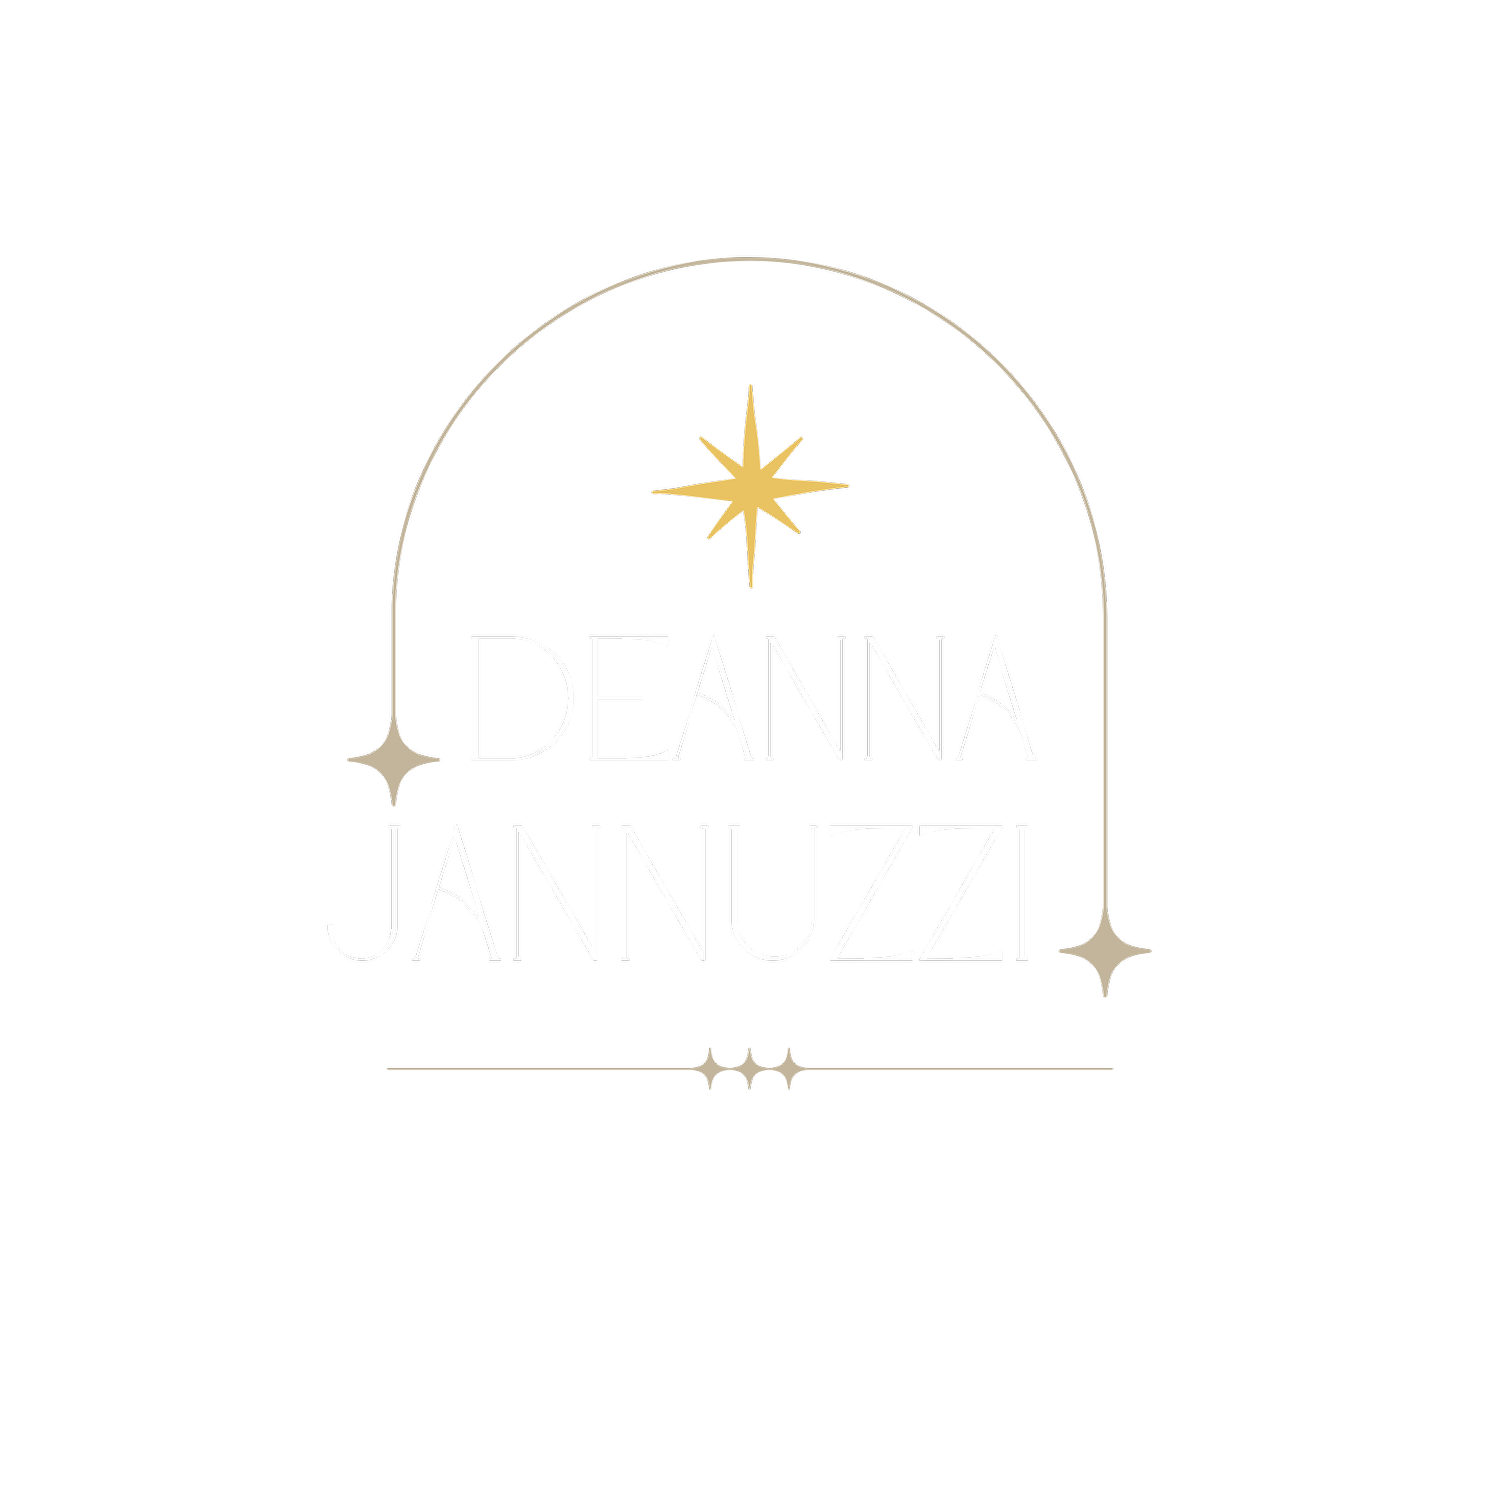 Deanna Jannuzzi